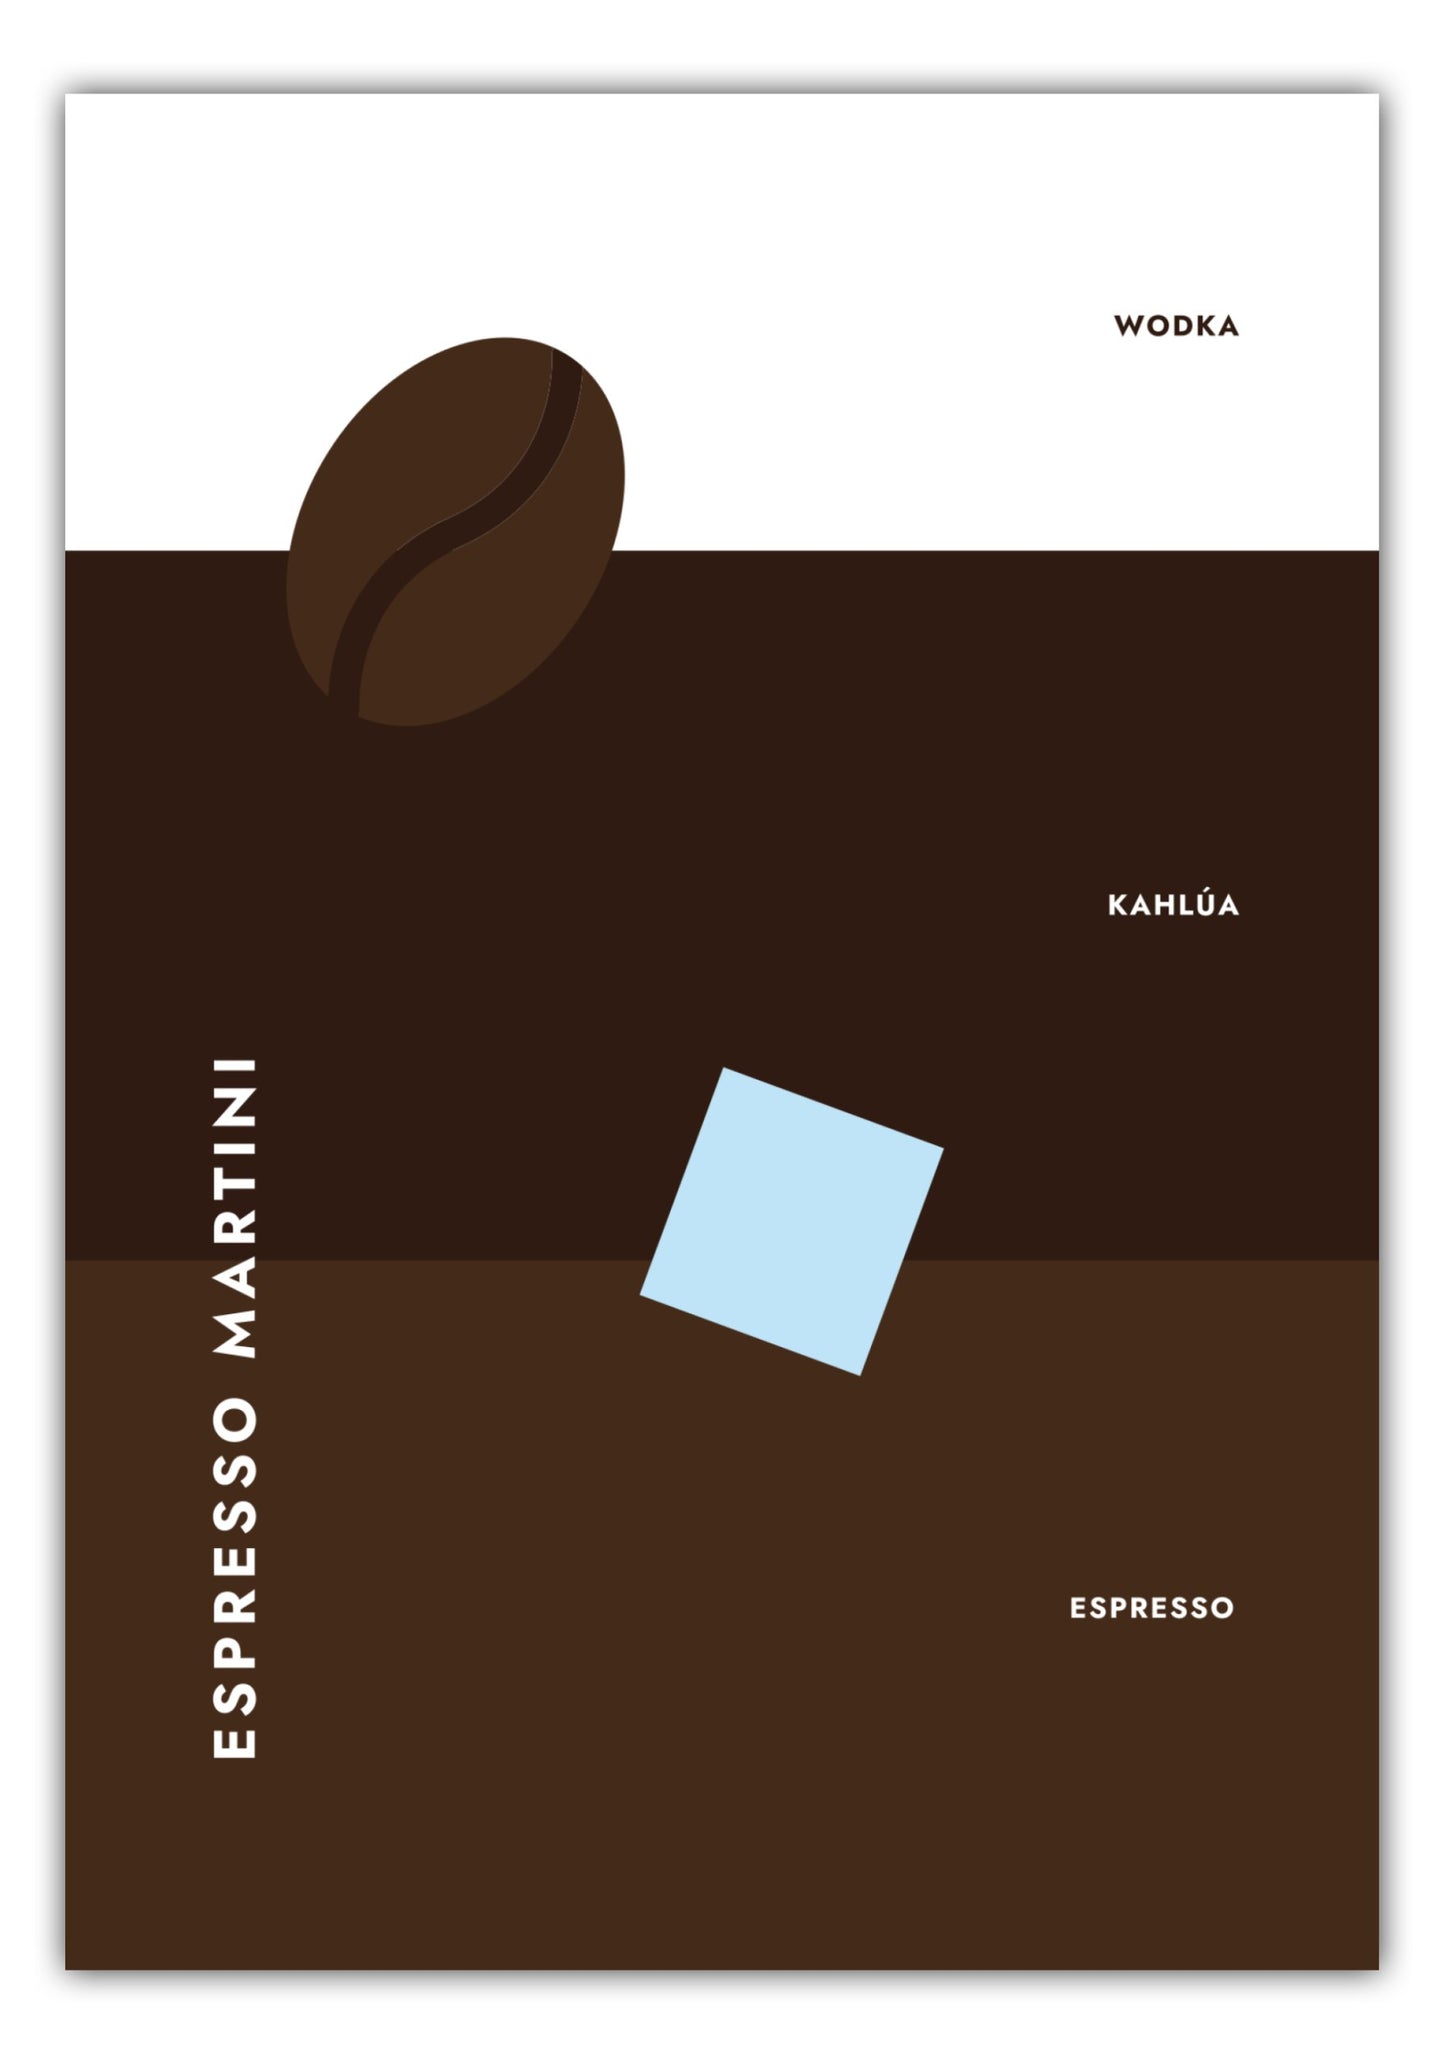 Poster Cocktail Espresso Martini